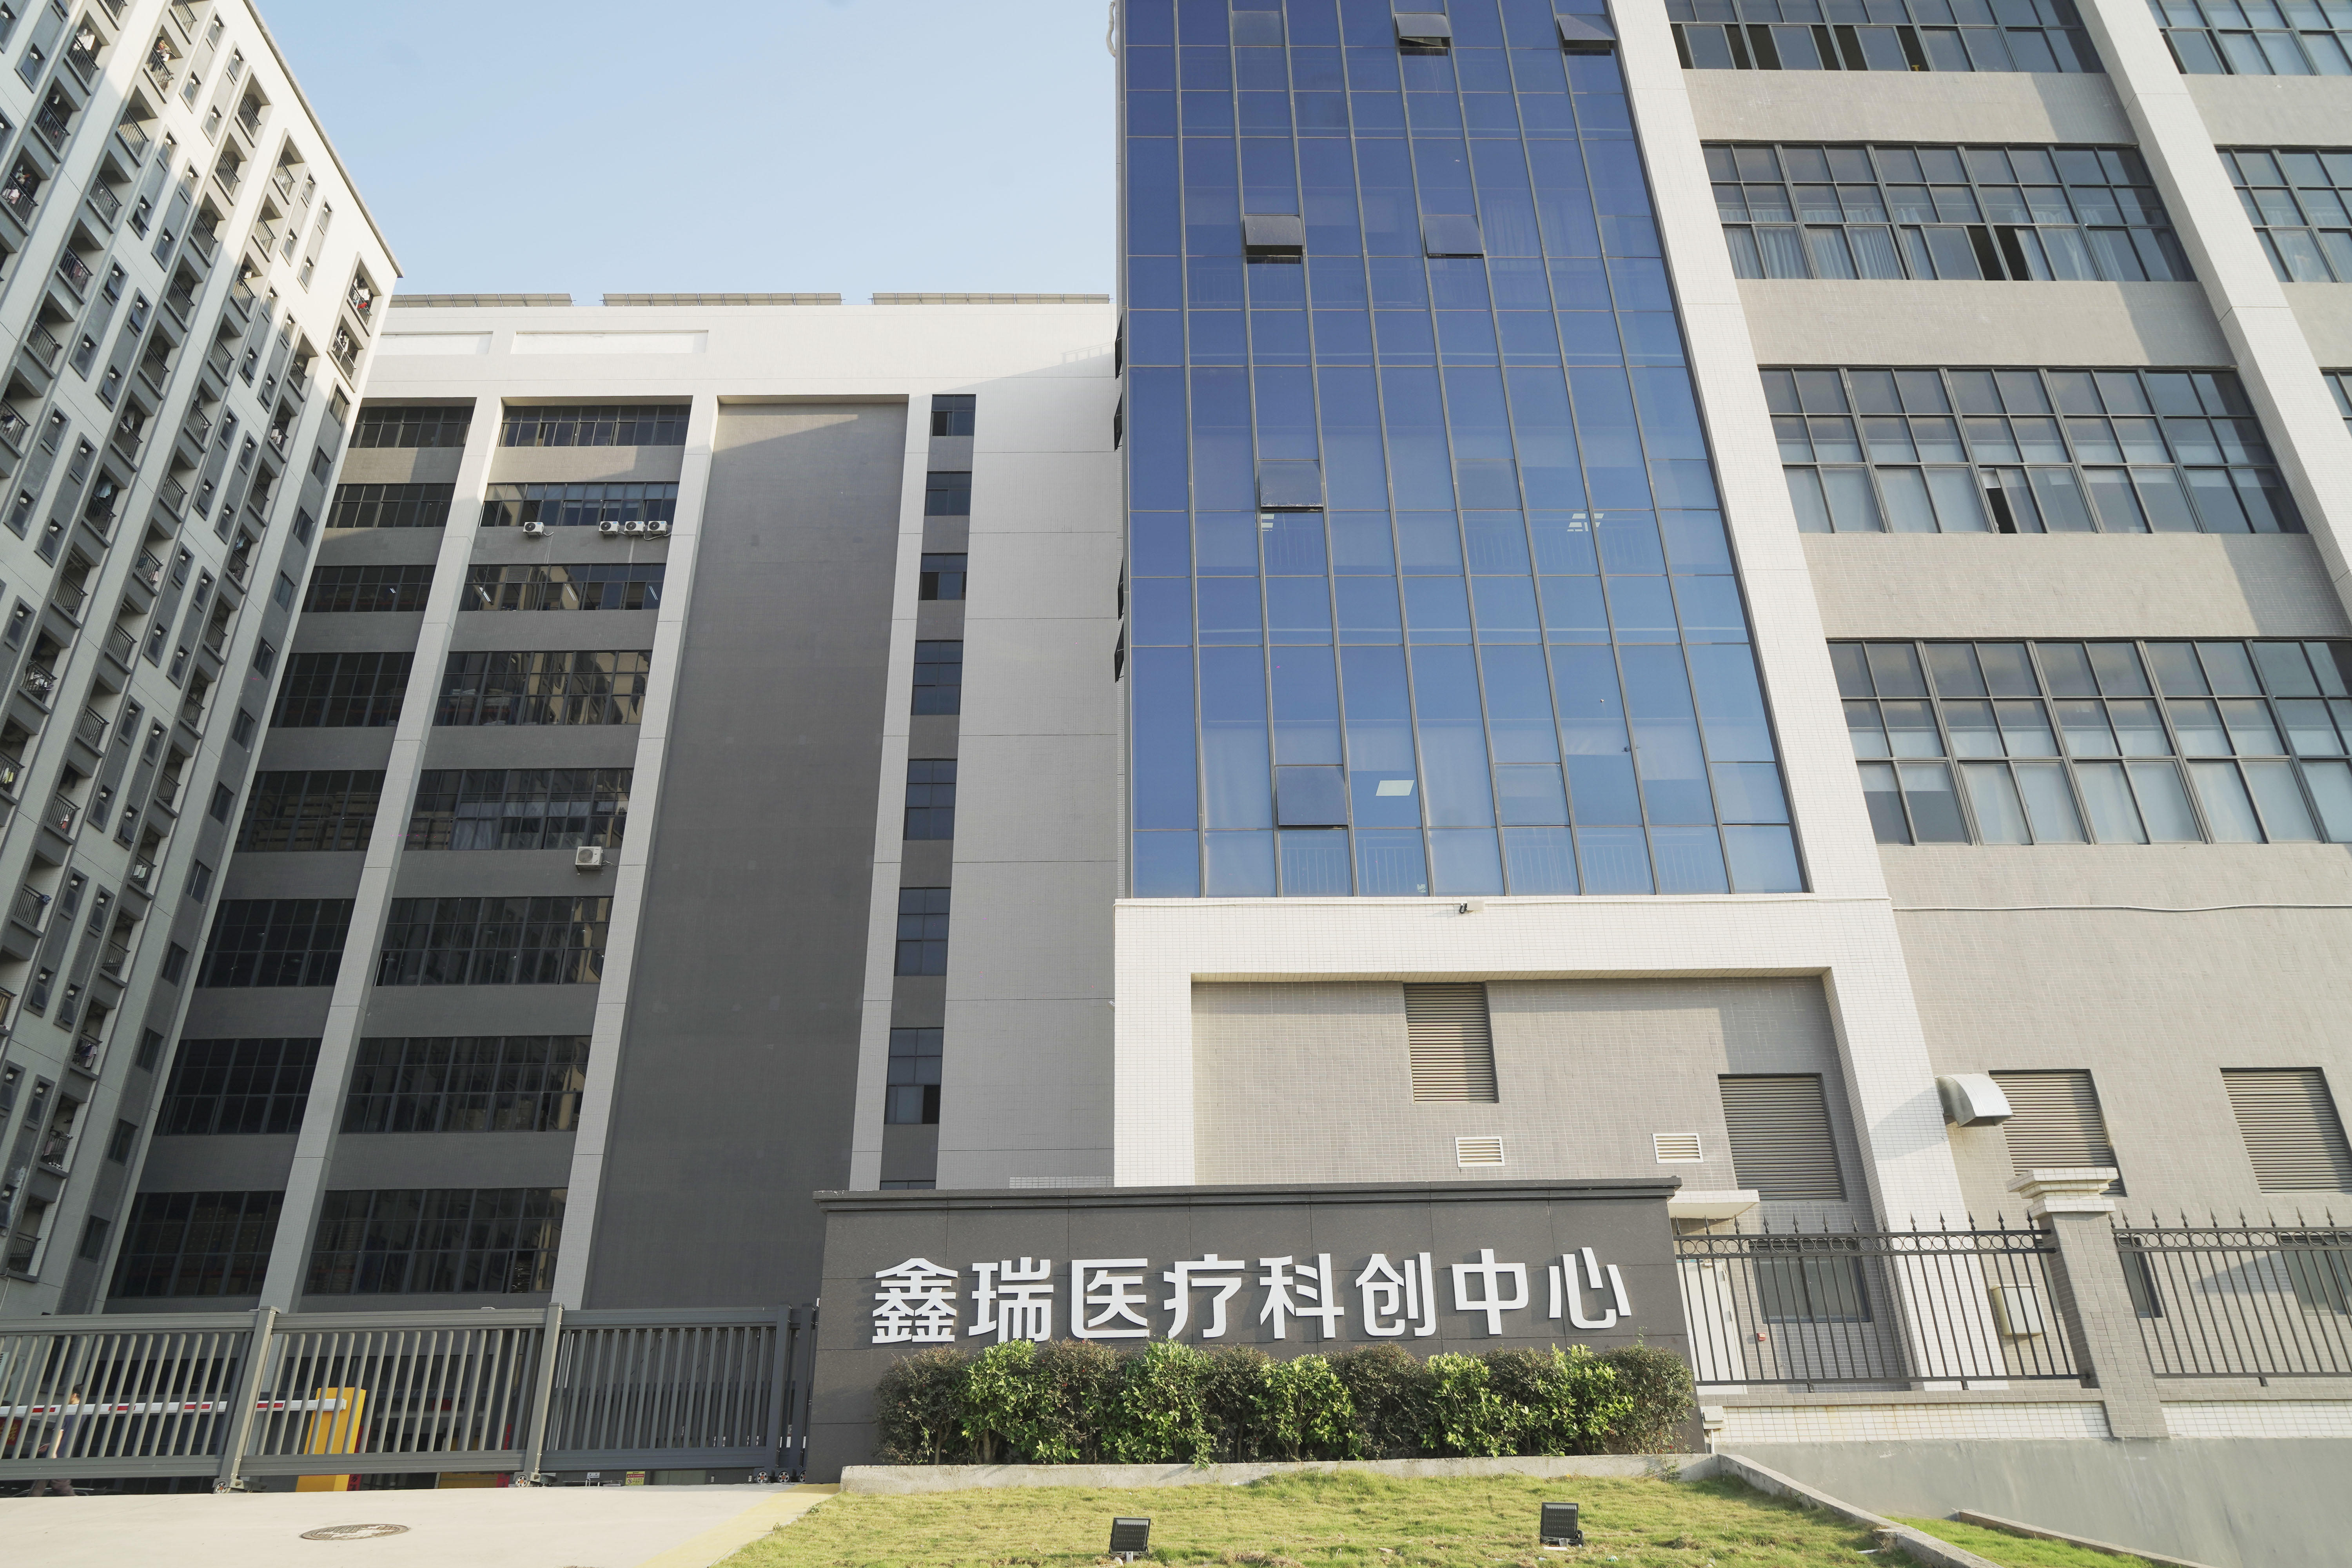     Huizhou Xinrui Medical Technology Co., Ltd